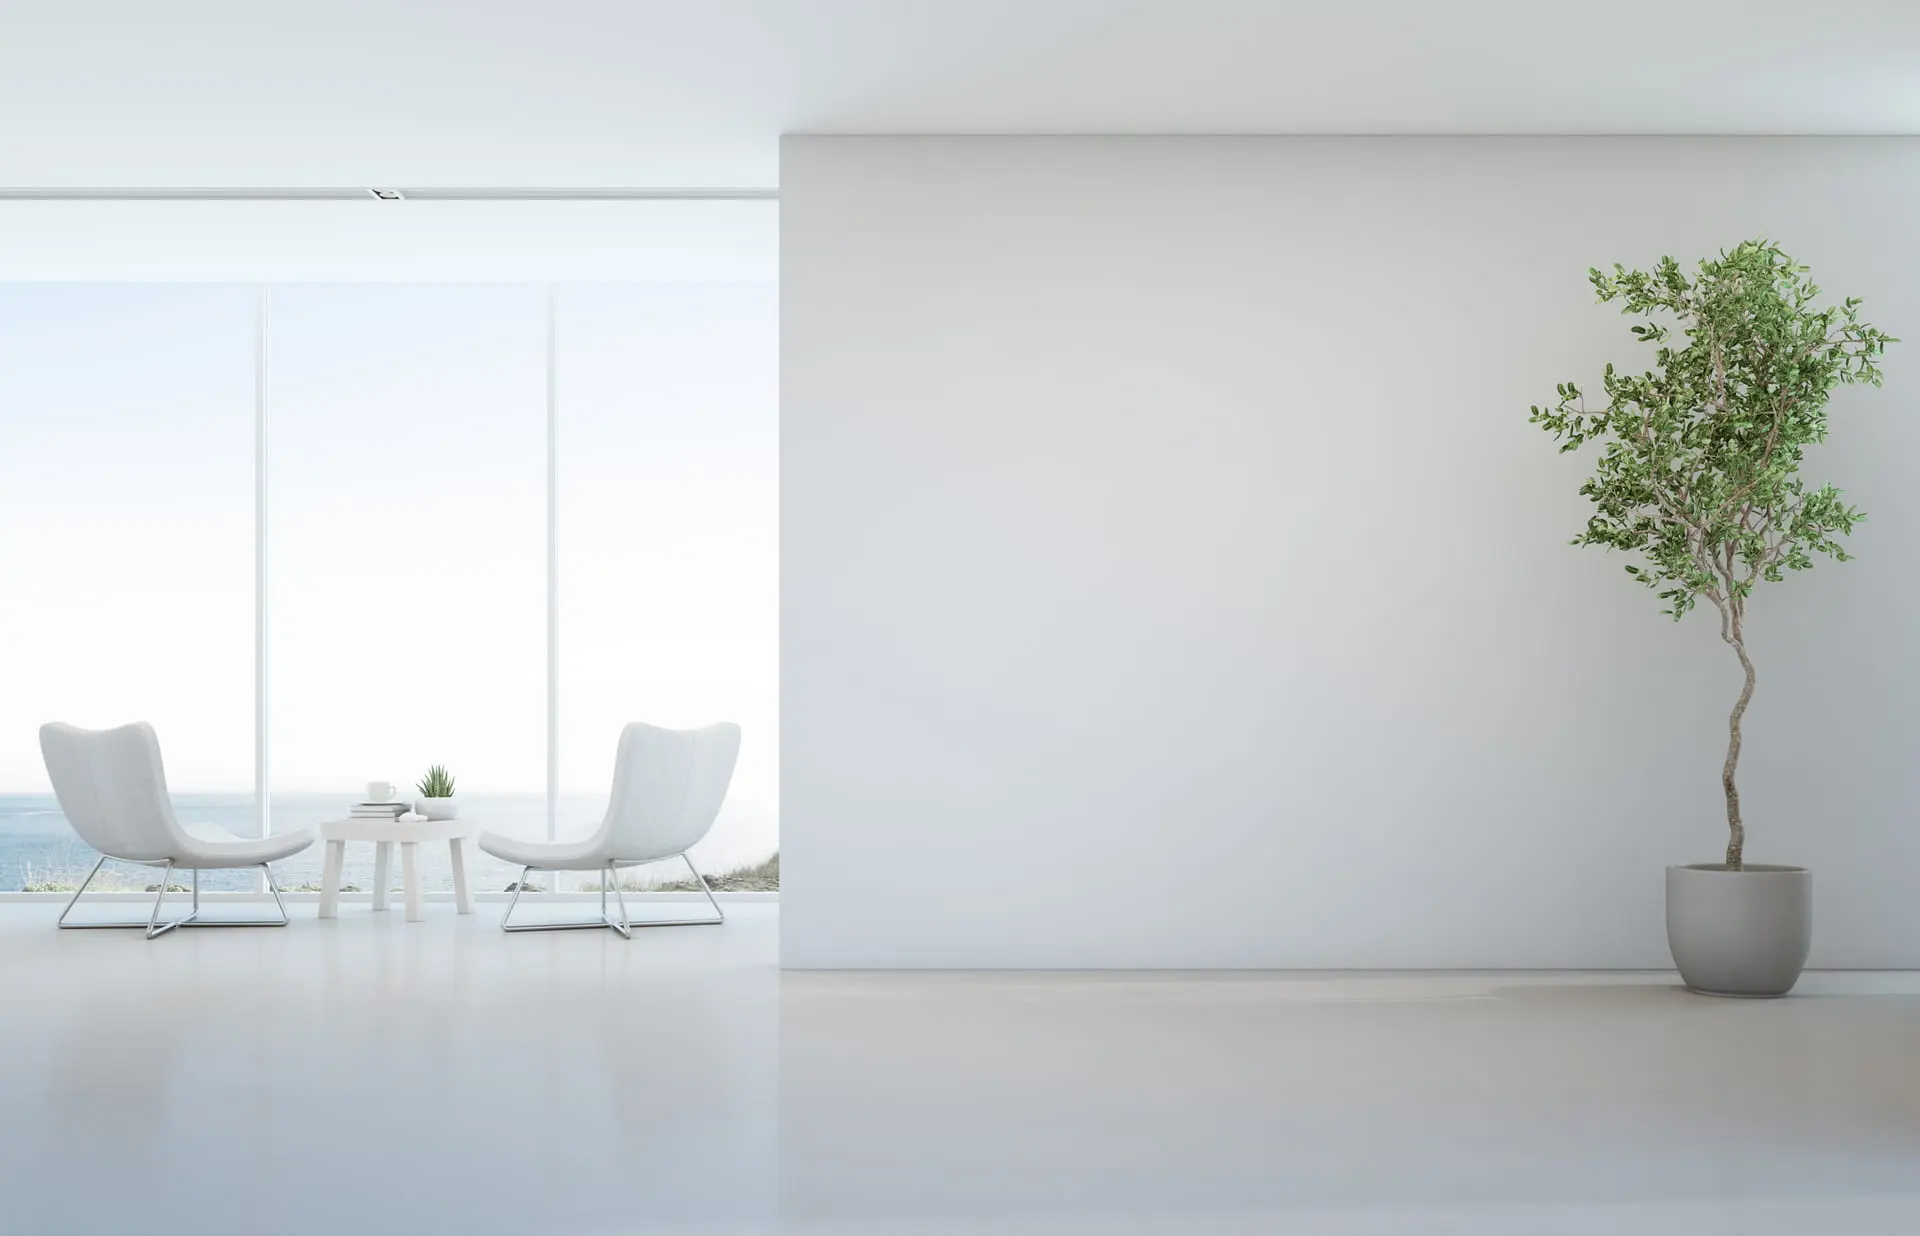 Sala de estar de estilo minimalista en tonos claros